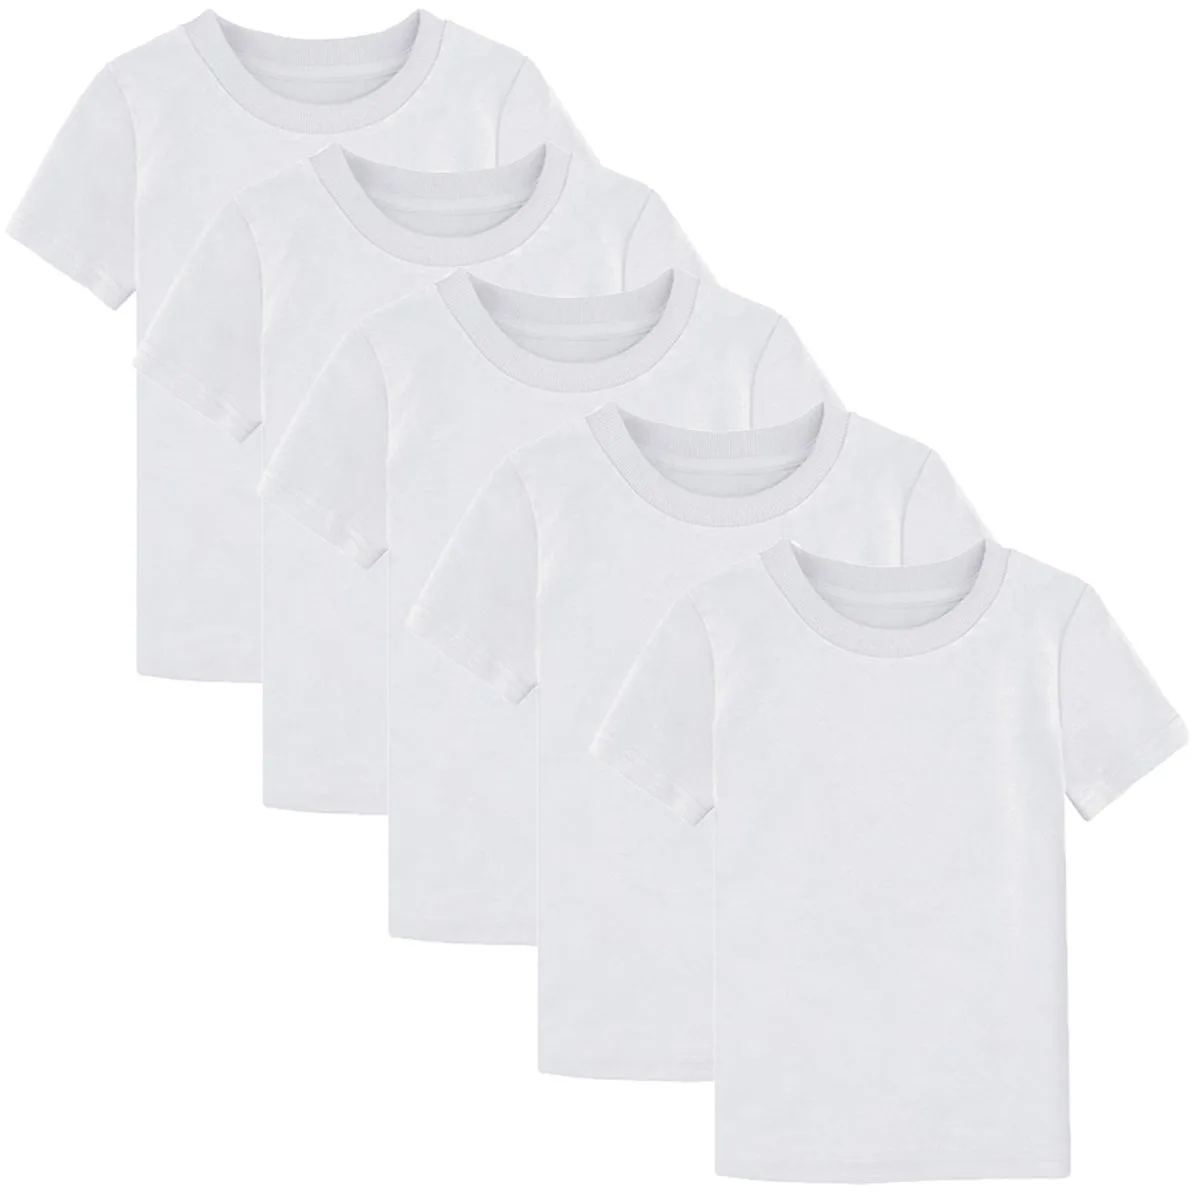 Детская футболка для мальчиков и девочек, Простые Топы для малышей, плотные Удобные Хлопковые футболки для малышей, 3 предмета, 4 предмета, 5 шт